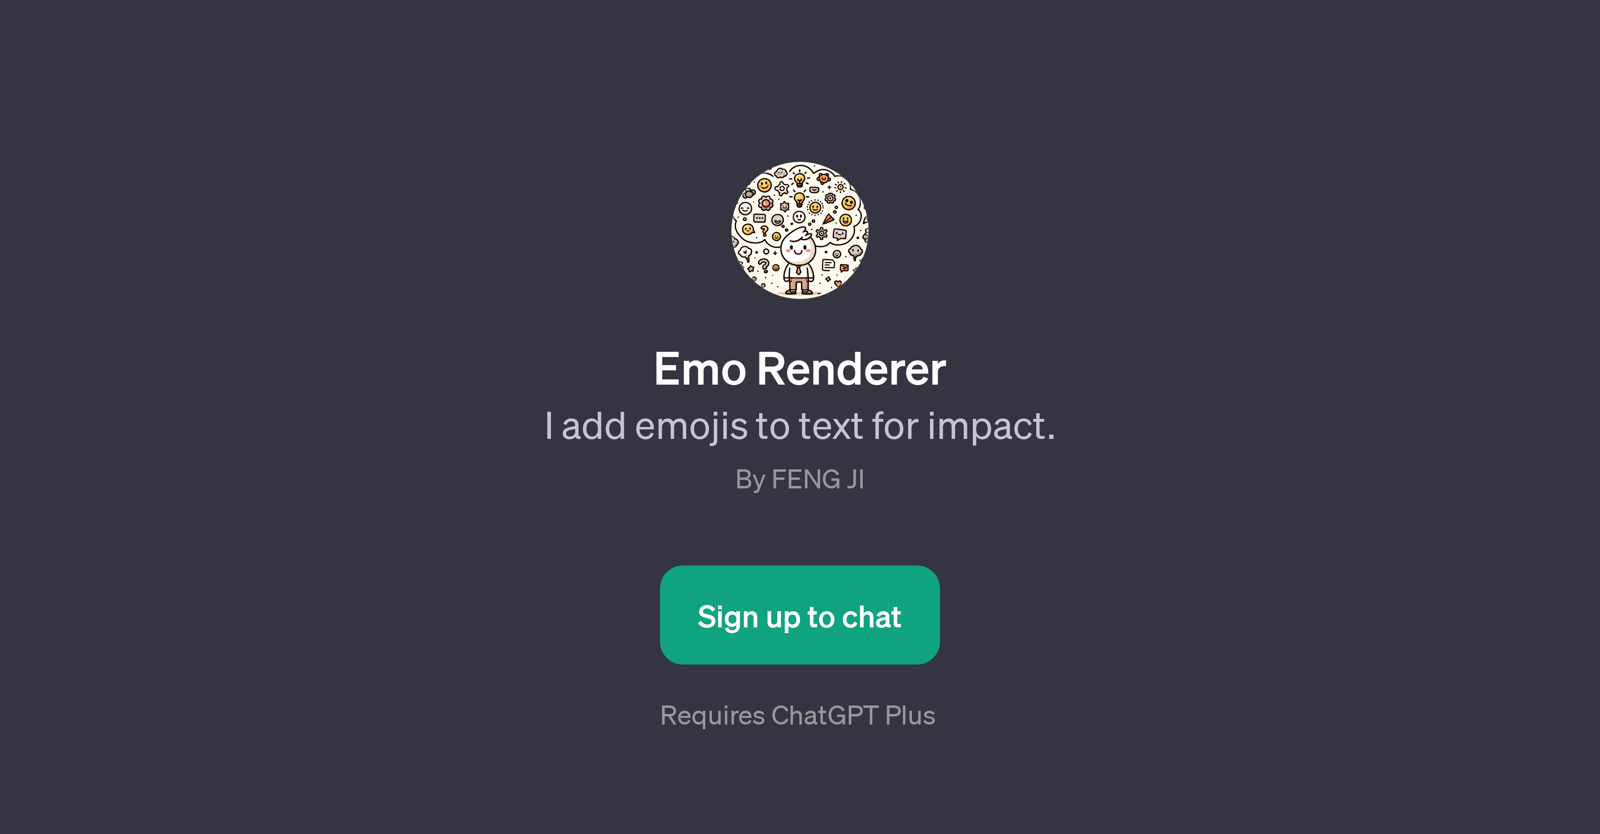 Emo Renderer website